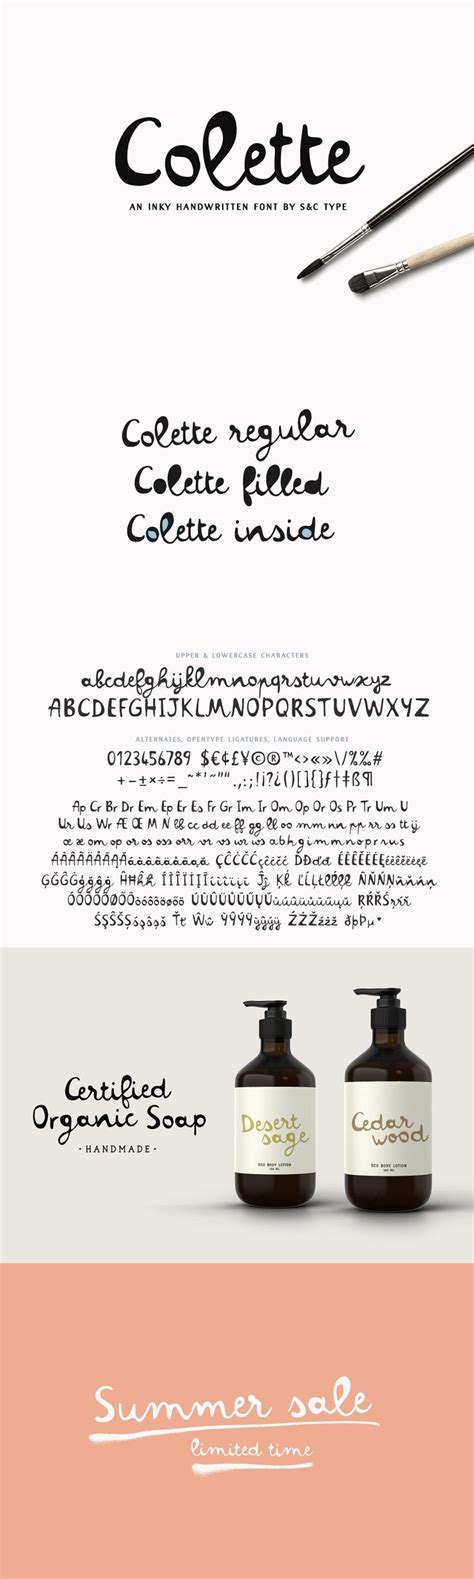 Colette Font Collection Script Fonts Design Handwritten Script Font